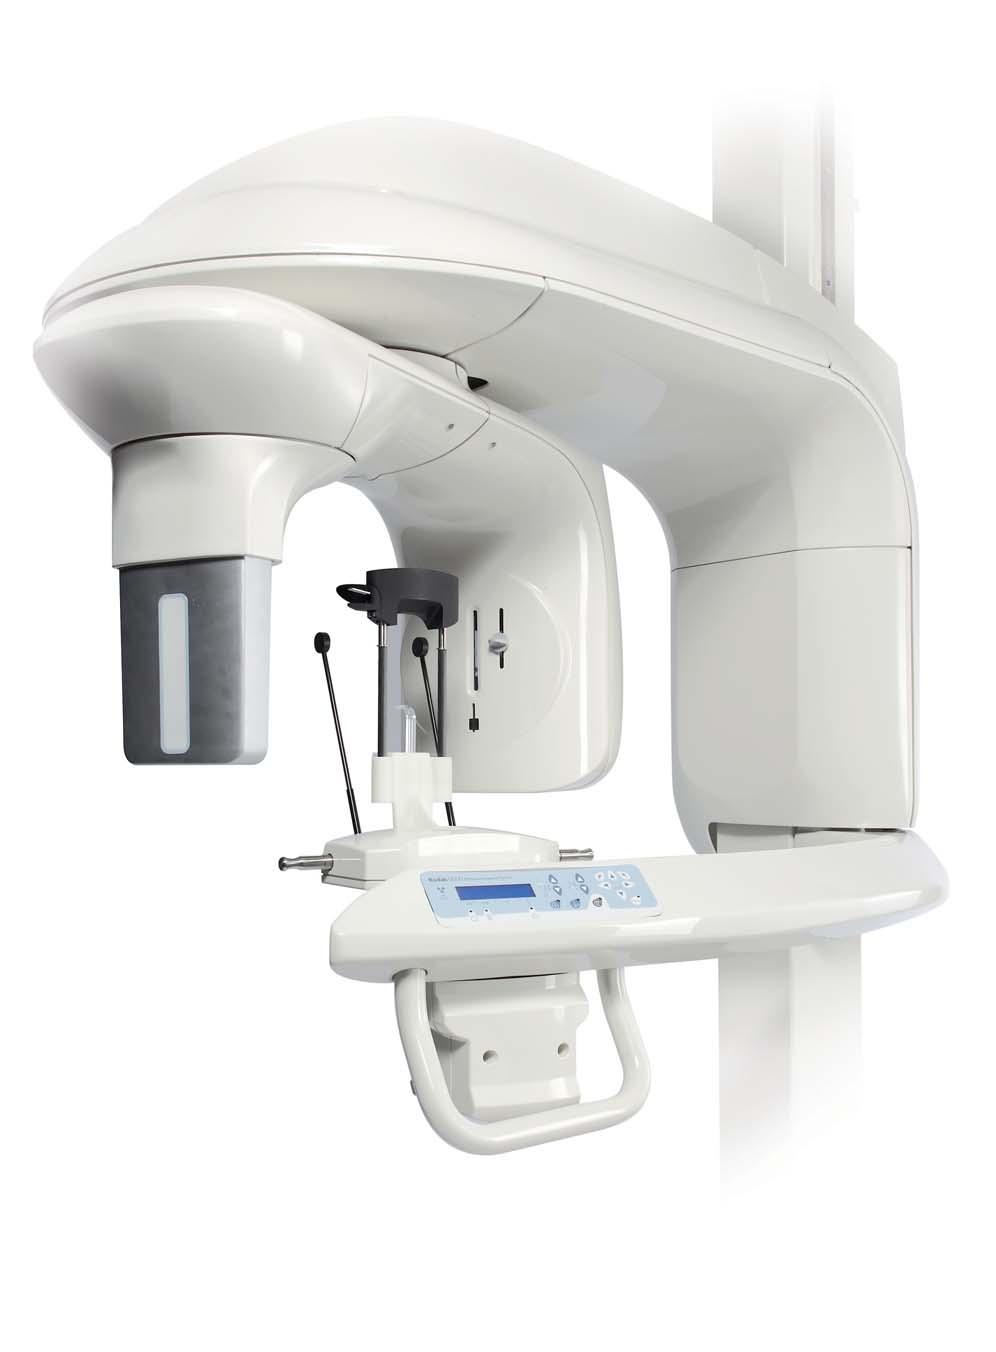 De toekomst binnen handbereik 3D betekent actueel Dentale röntgenfotografie is veranderd: de technologie van de toekomst is nu voor iedereen beschikbaar.